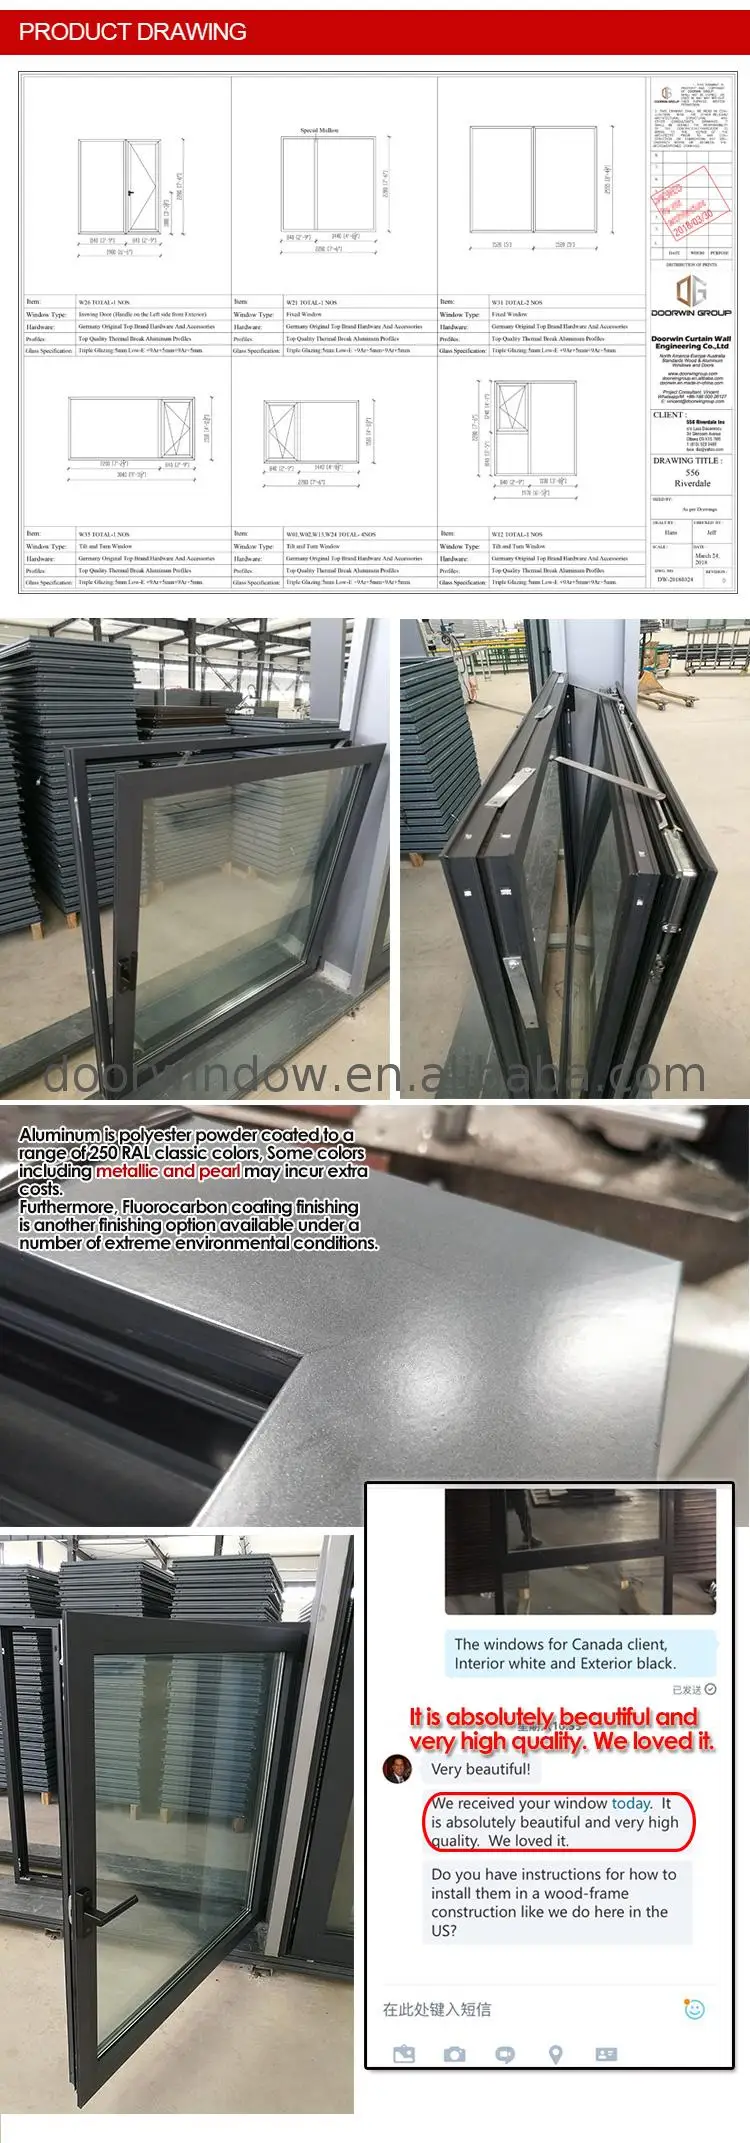 New York aluminum 24 x 60 casement window cheap casement windows